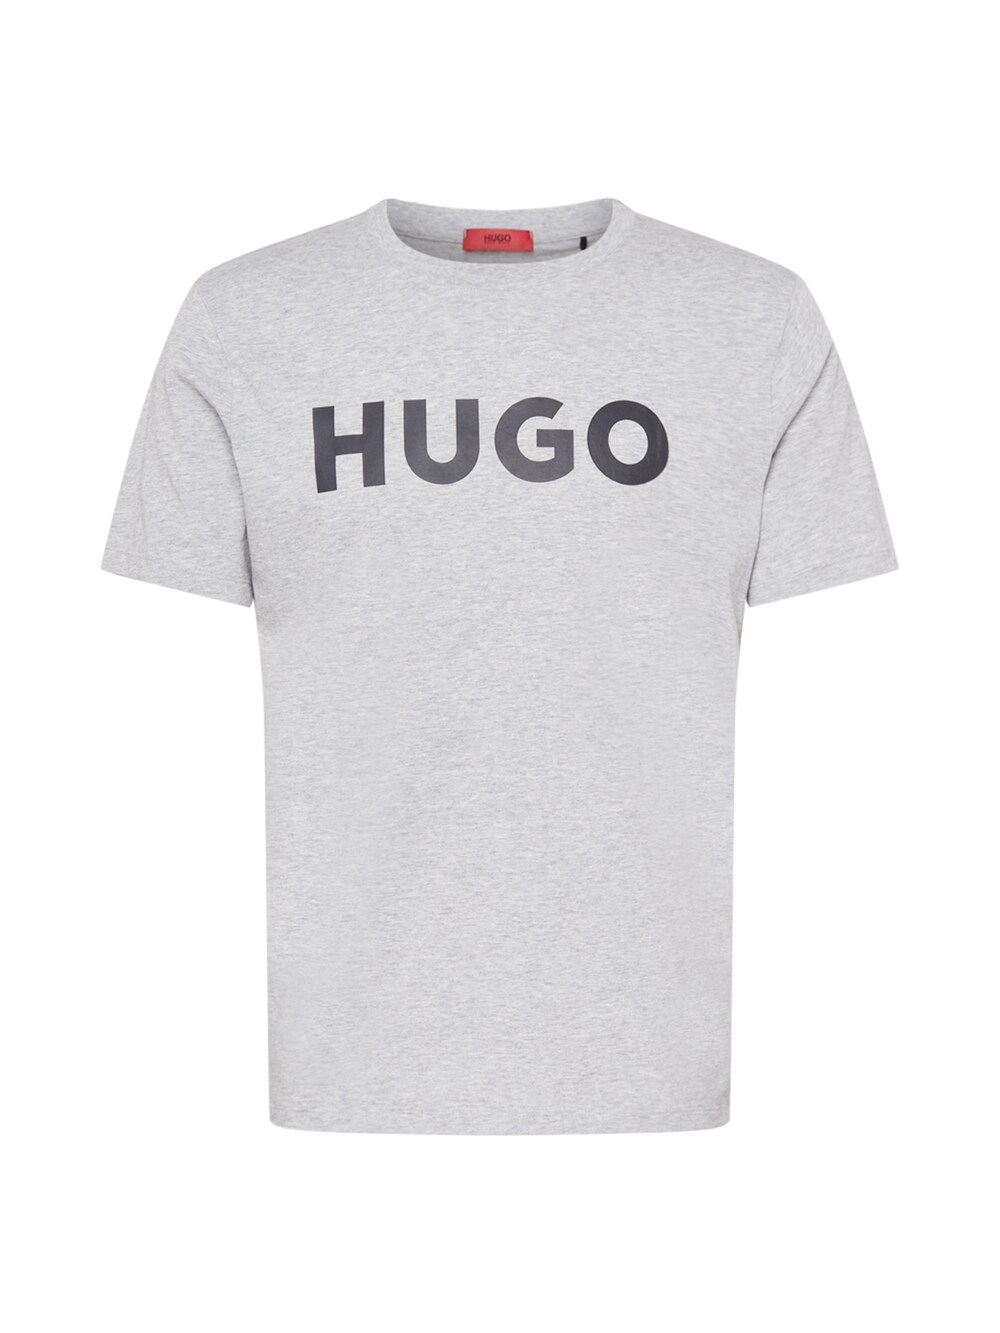 Футболка HUGO Dulivio, пестрый серый бежевая свободная футболка унисекс hugo dulivio hugo red